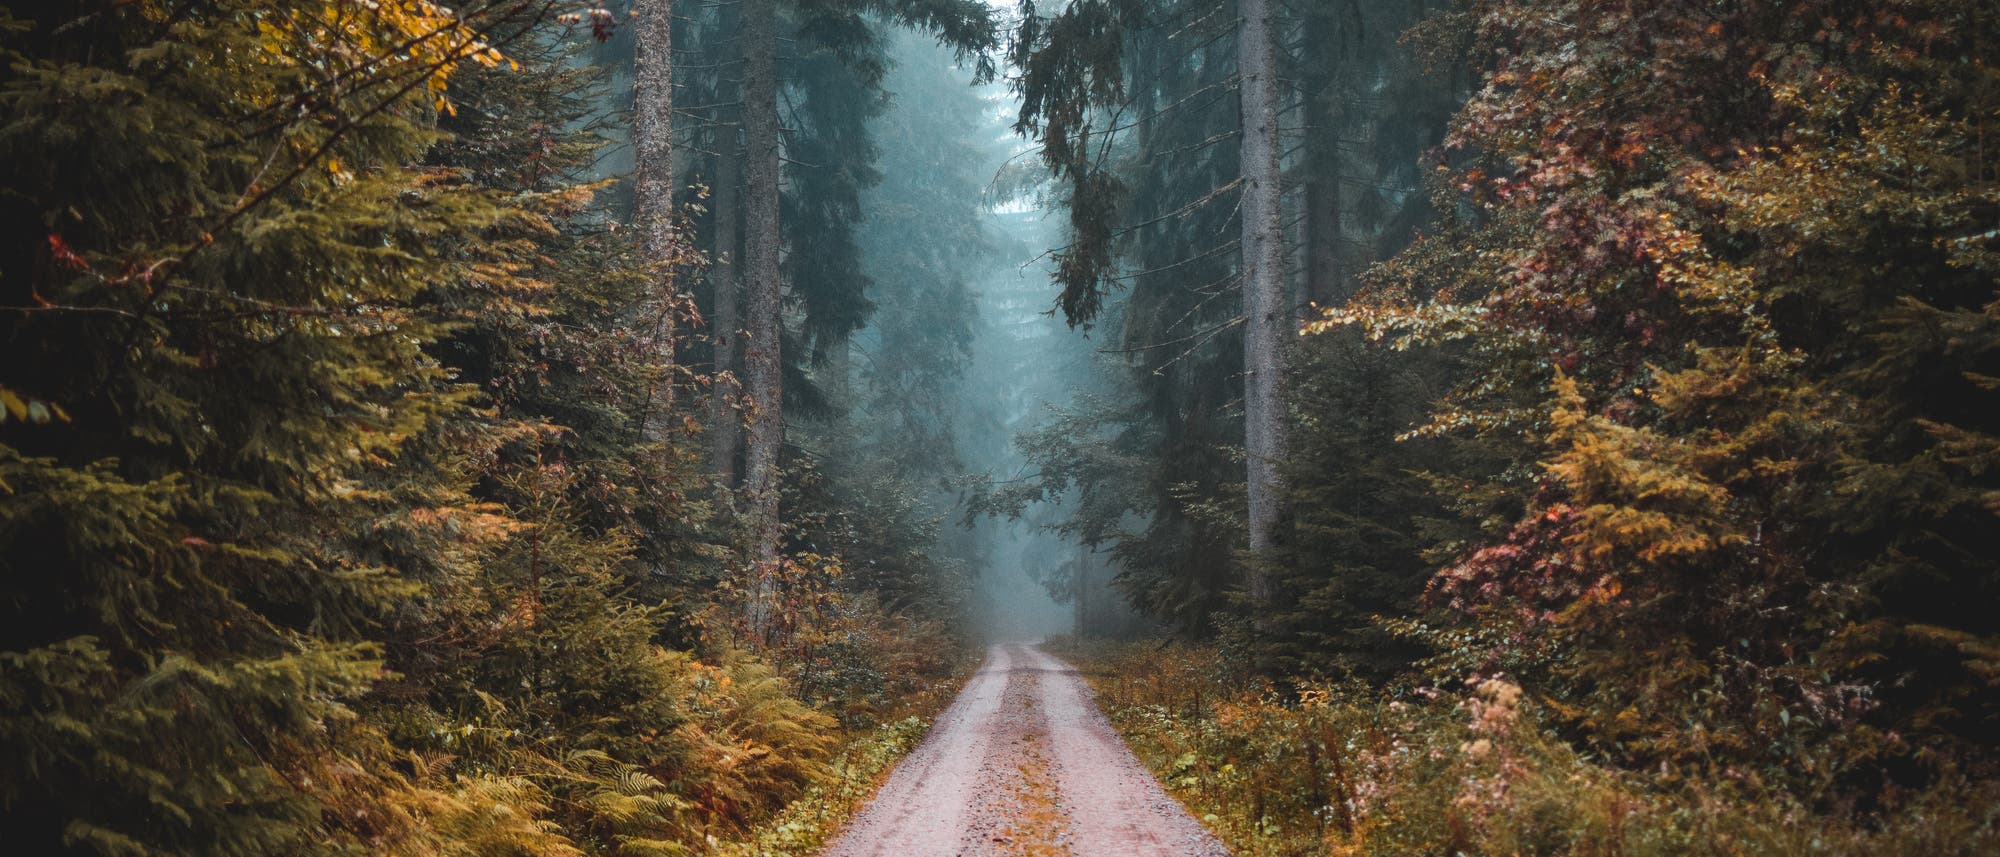 Eine Fahrstraße durch einen dunklen, dichten Wald